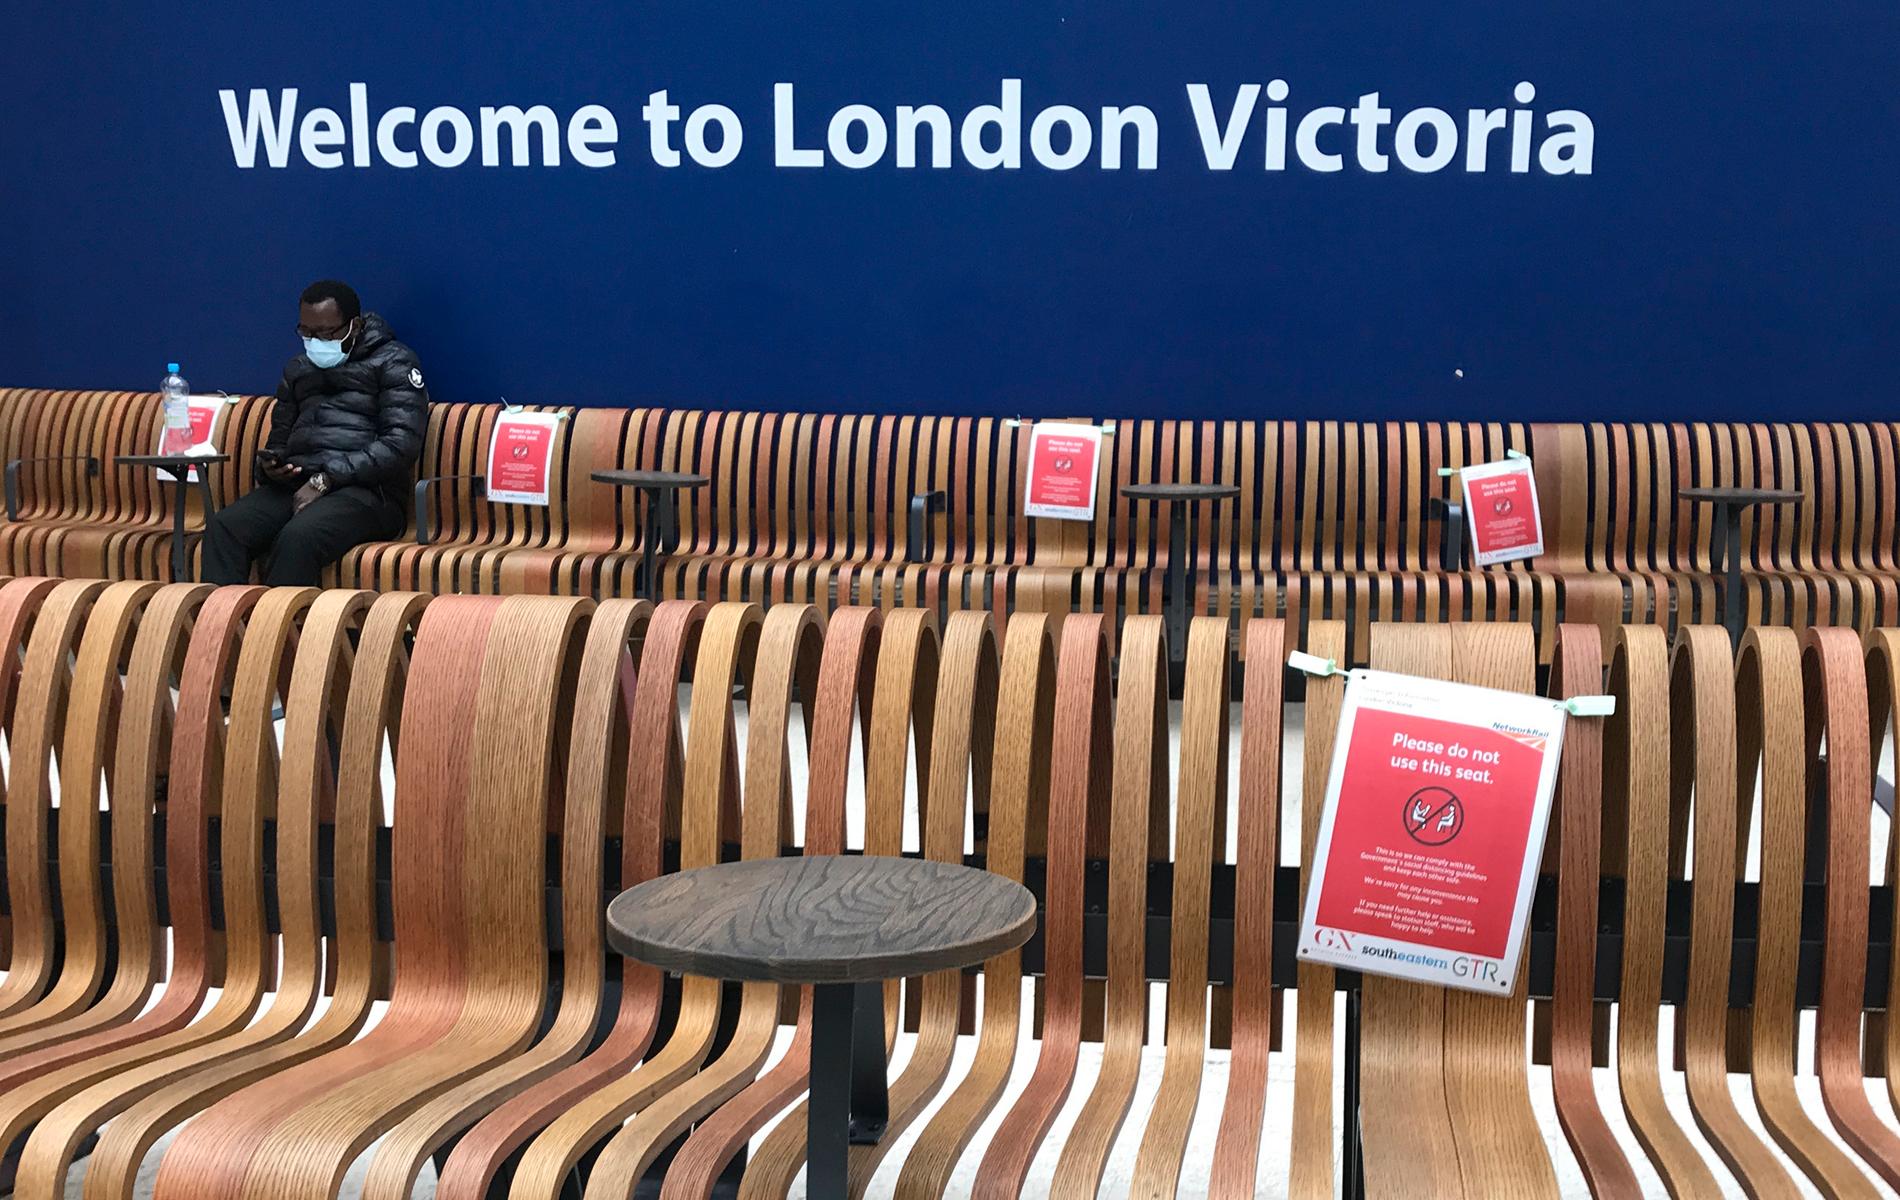 Skyltar i vänthallen på Victoria station i London manar besökare att hålla avstånd. En anställd på stationen dog sedan en man som sade sig vara coronasmittad hostade och spottade mot henne. Bild från tidigare i veckan.